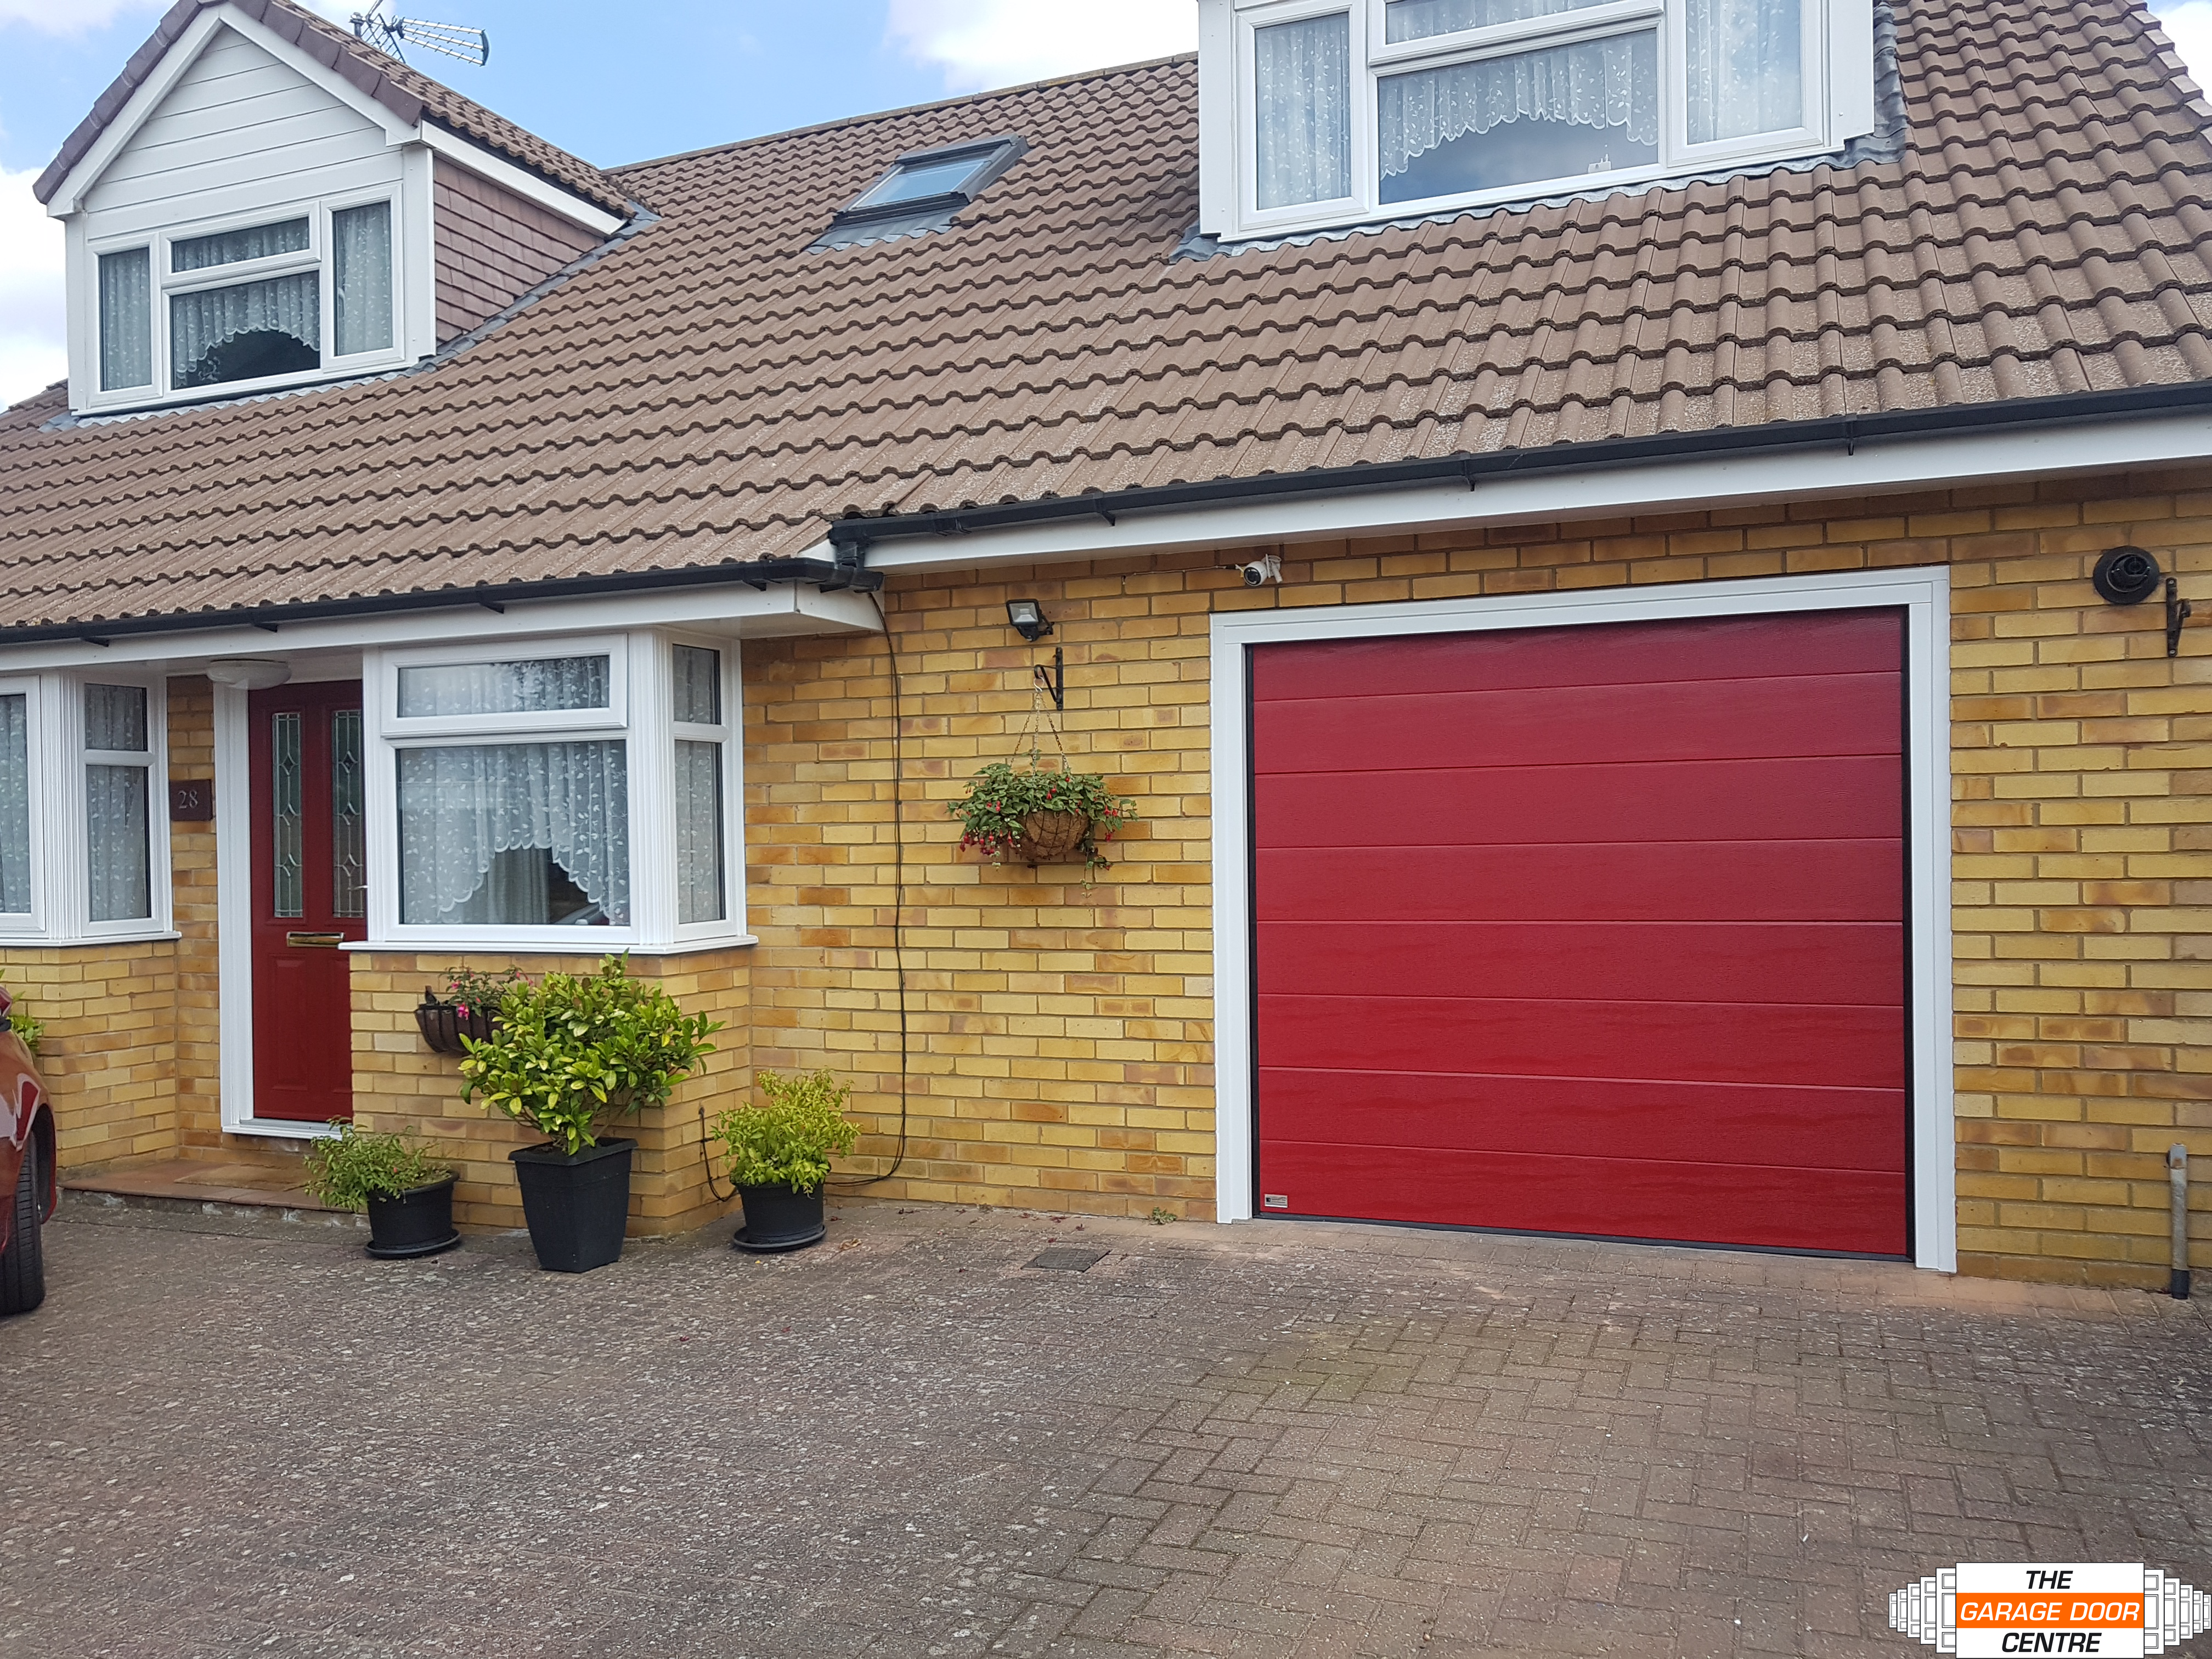 Matching Garage Door with entrance door in red